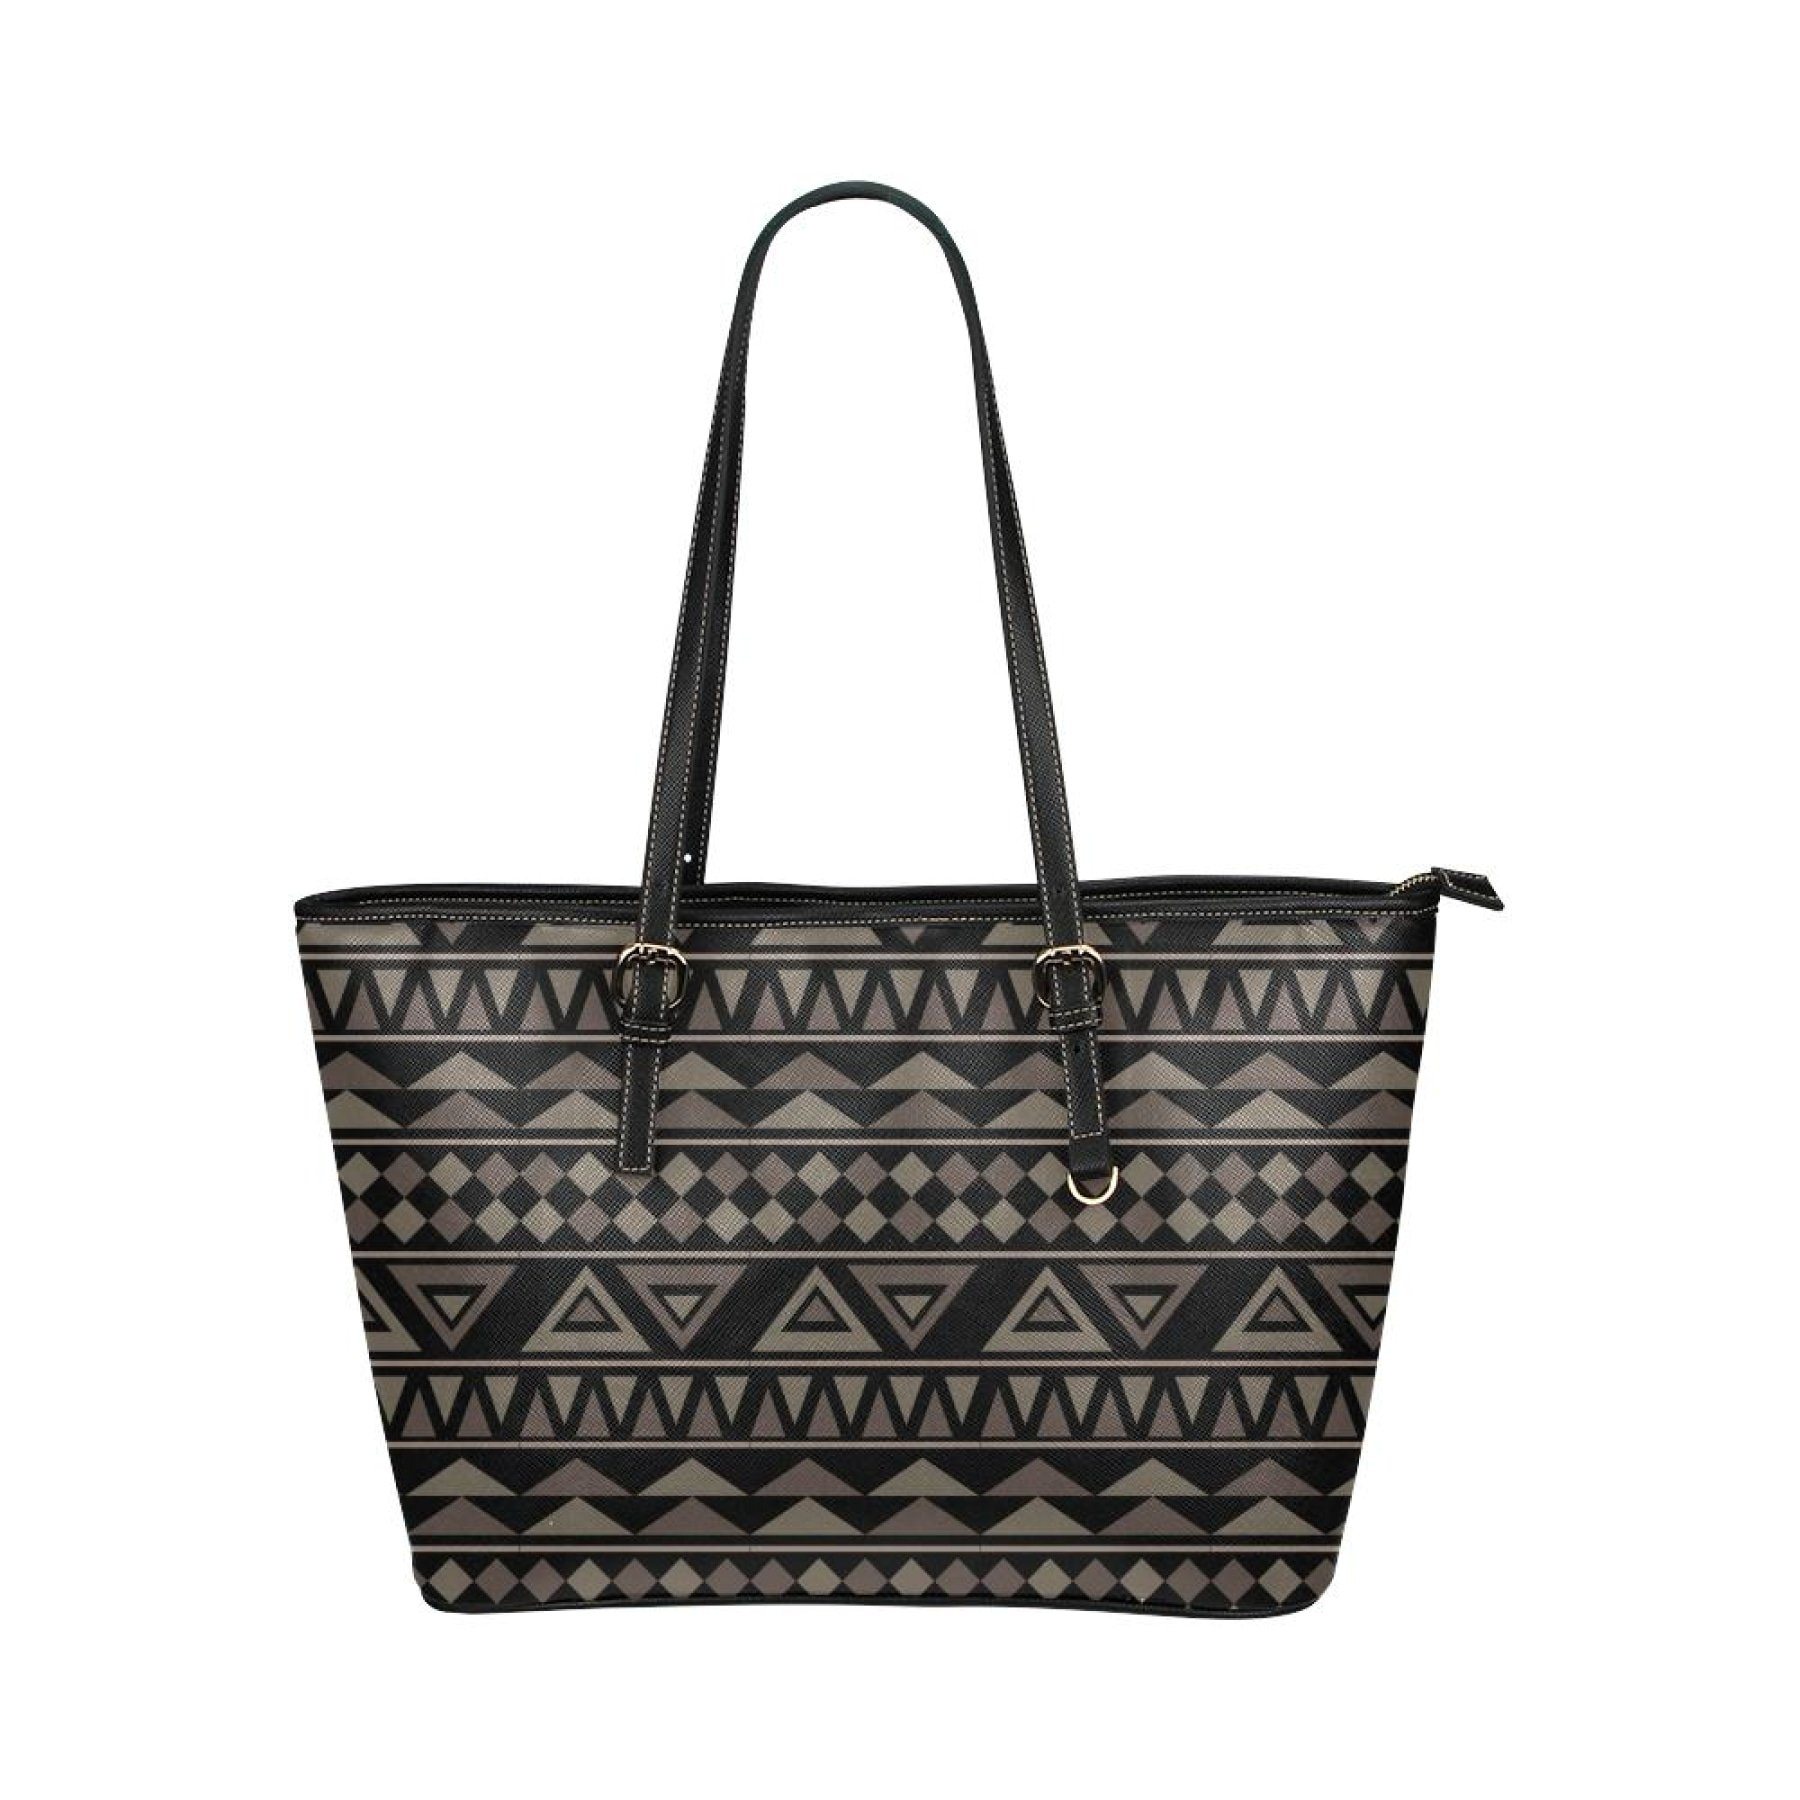 Black Tote Shoulder Bag With Aztec Design 19